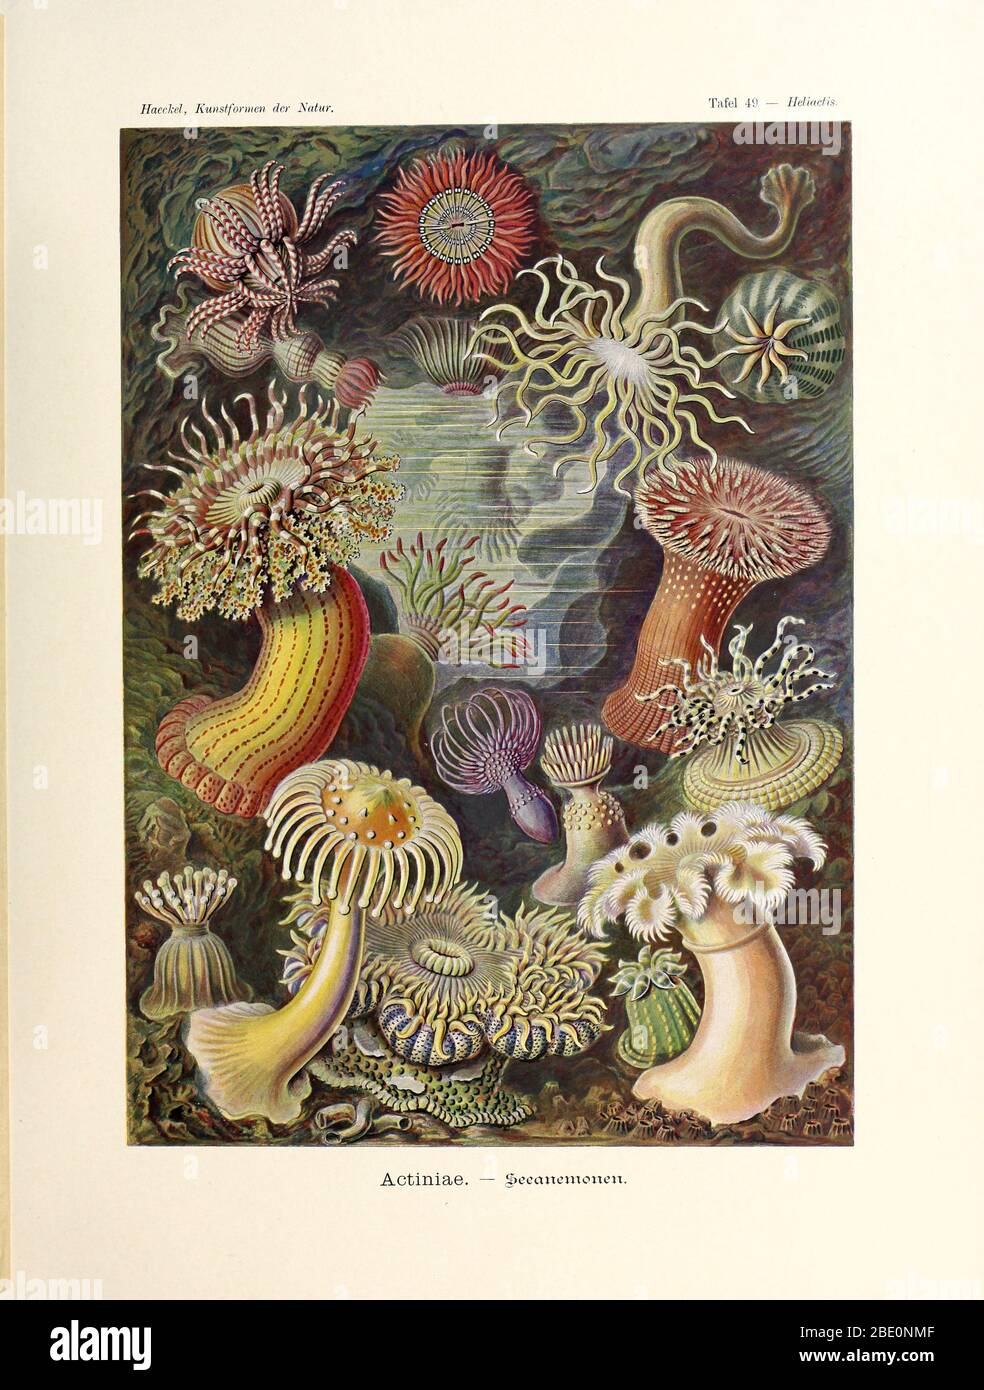 Sea anemone (Actiniae) from Ernst Haeckel's Kunstformen der Natur, 1904 Stock Photo